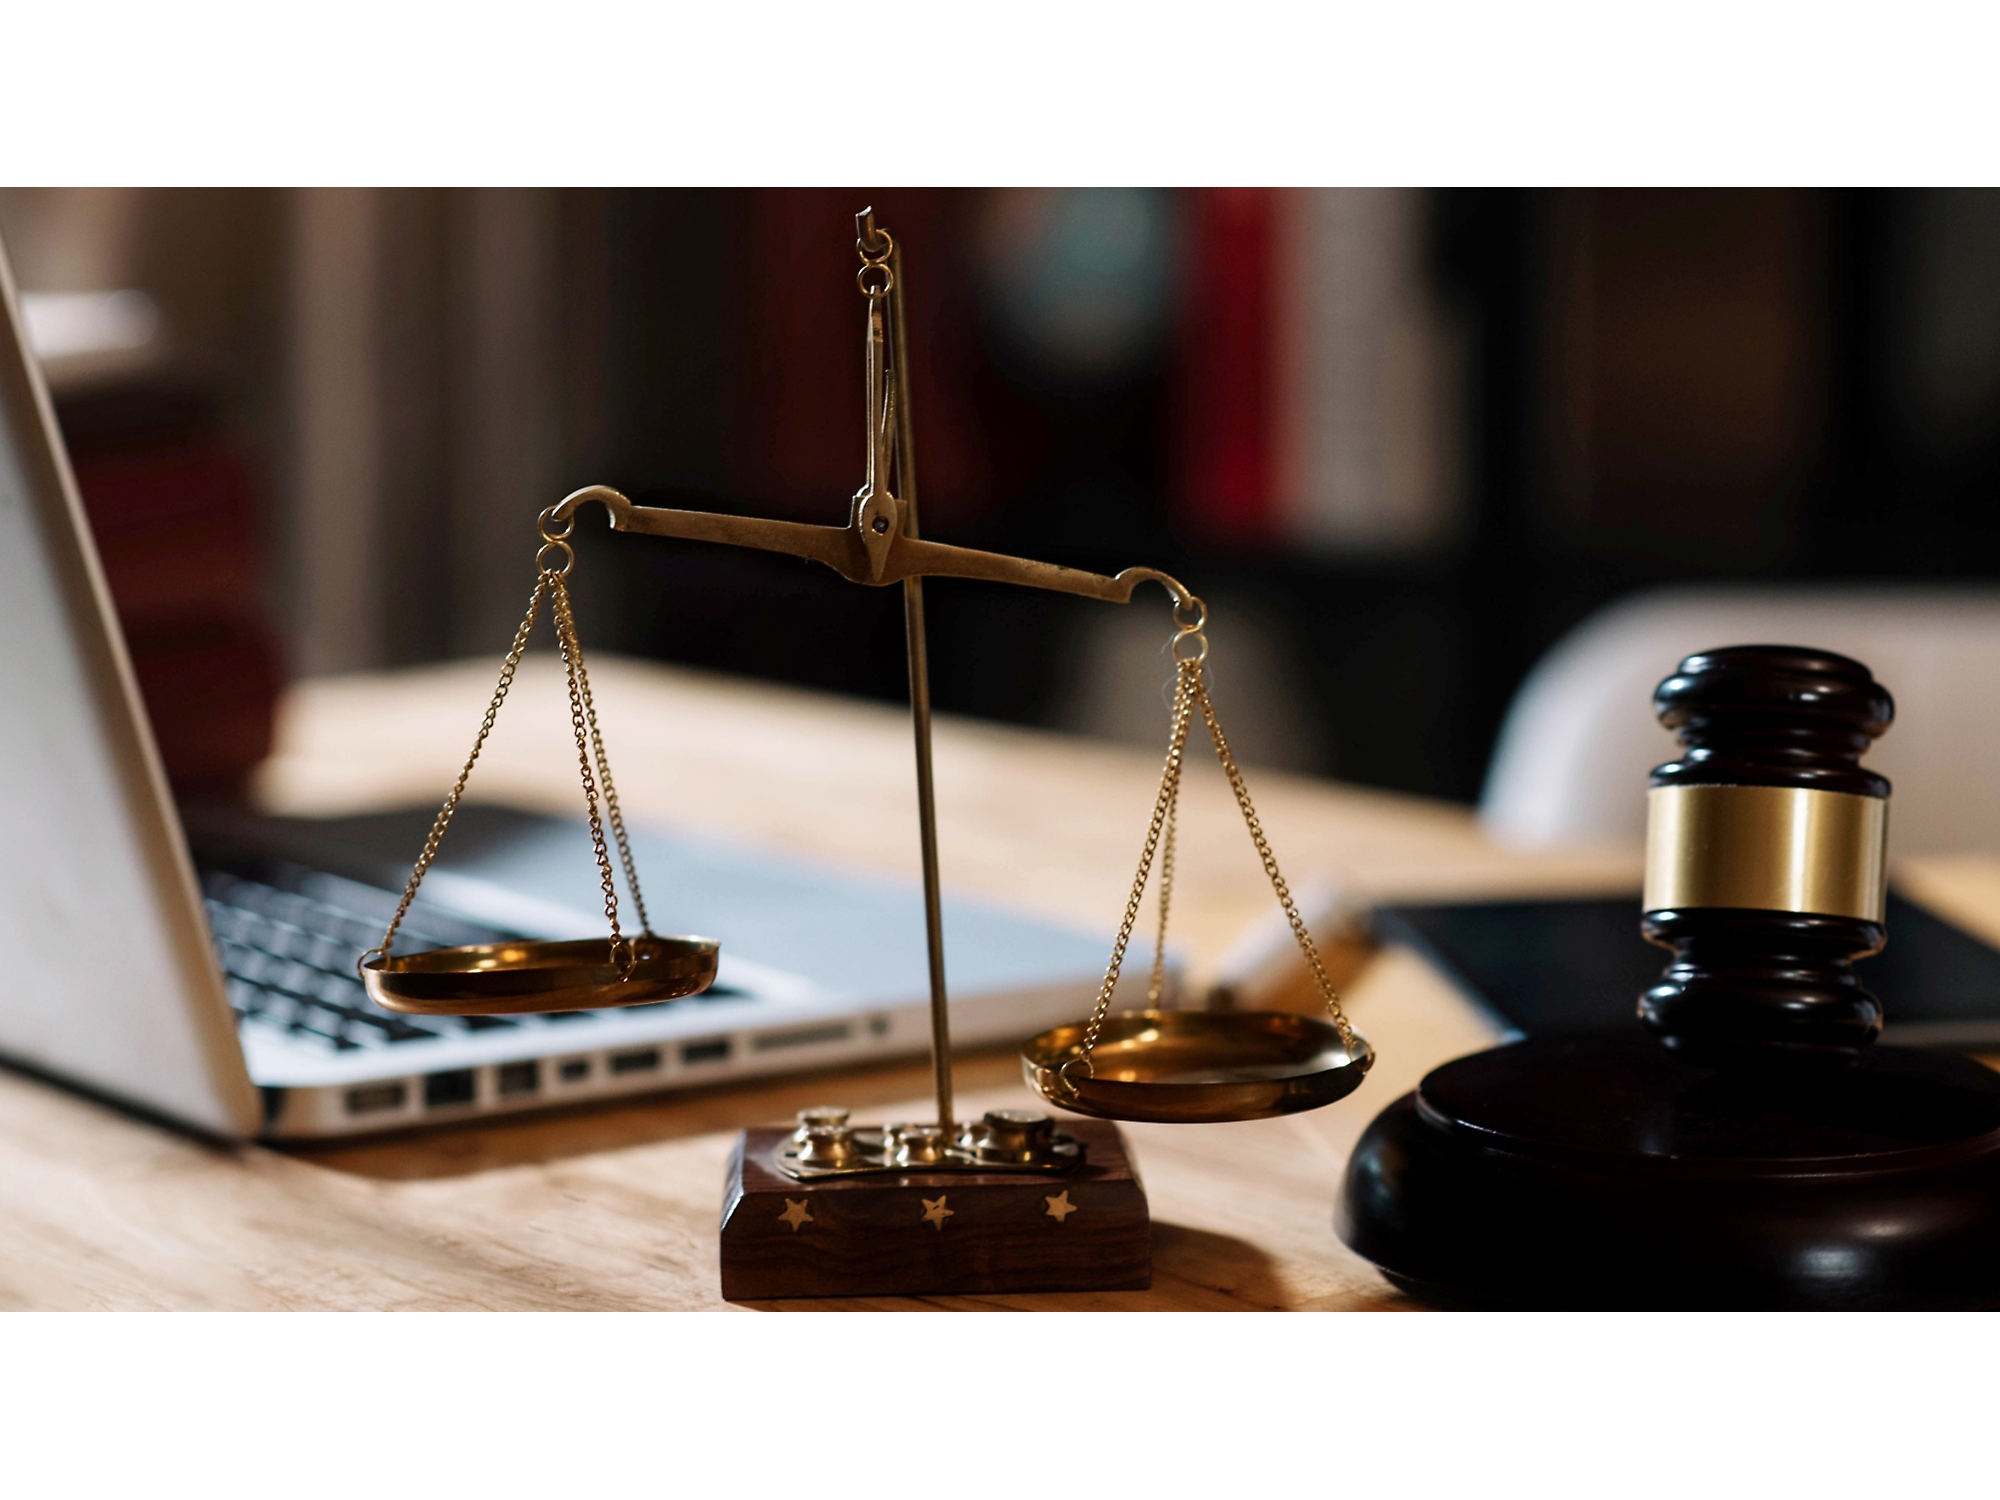 Drewniany młotek sędziego i zestaw wag na biurku z laptopem w tle, symbolizujący praktykę prawną w biurze.